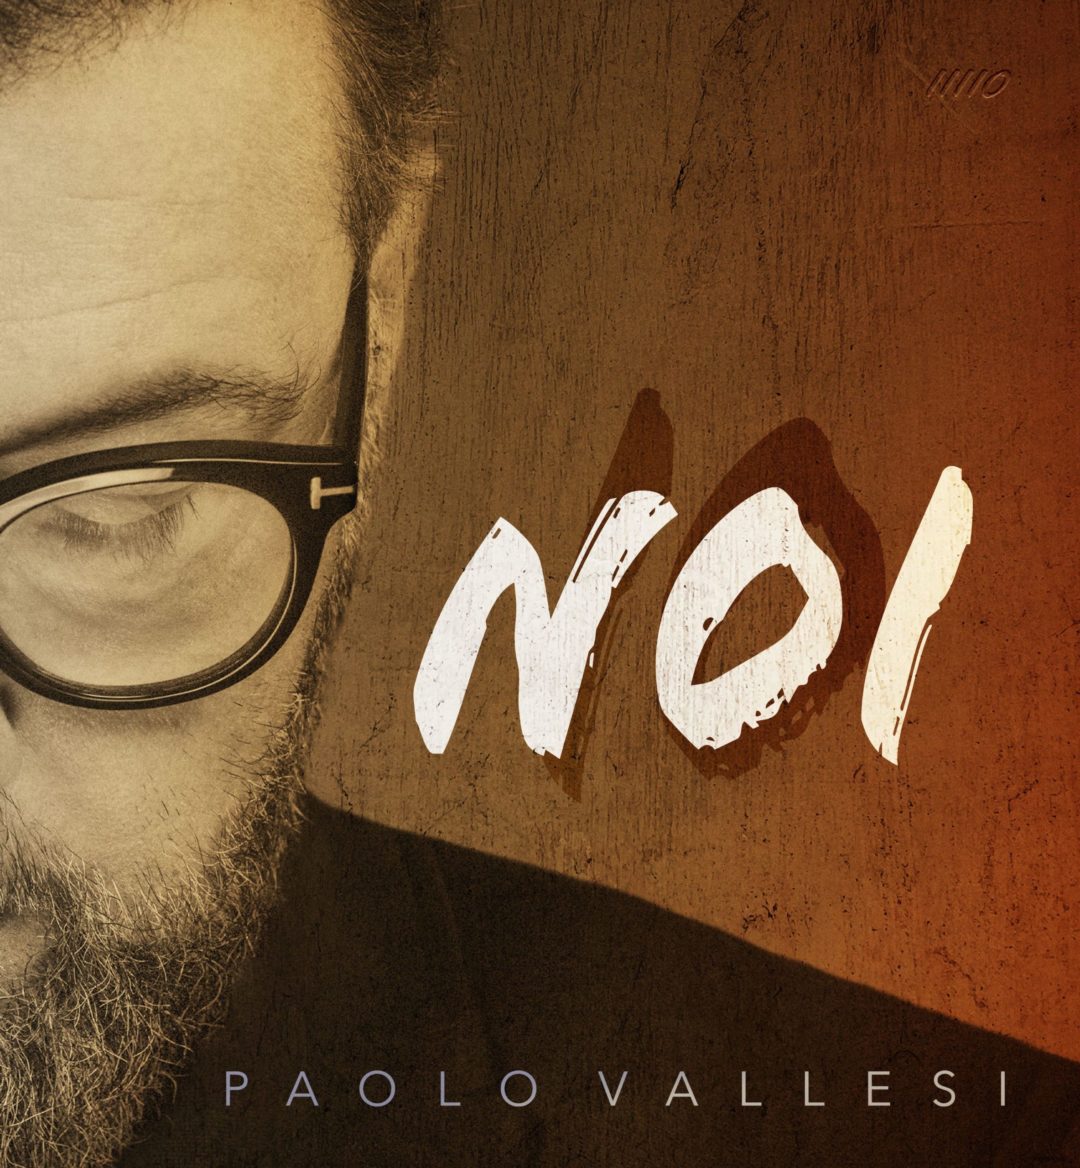 PAOLO VALLESI: esce il progetto per festeggiar i 30 anni di carriera. Due album, uno di inediti e l’altro con i suoi successi insieme ai big della musica